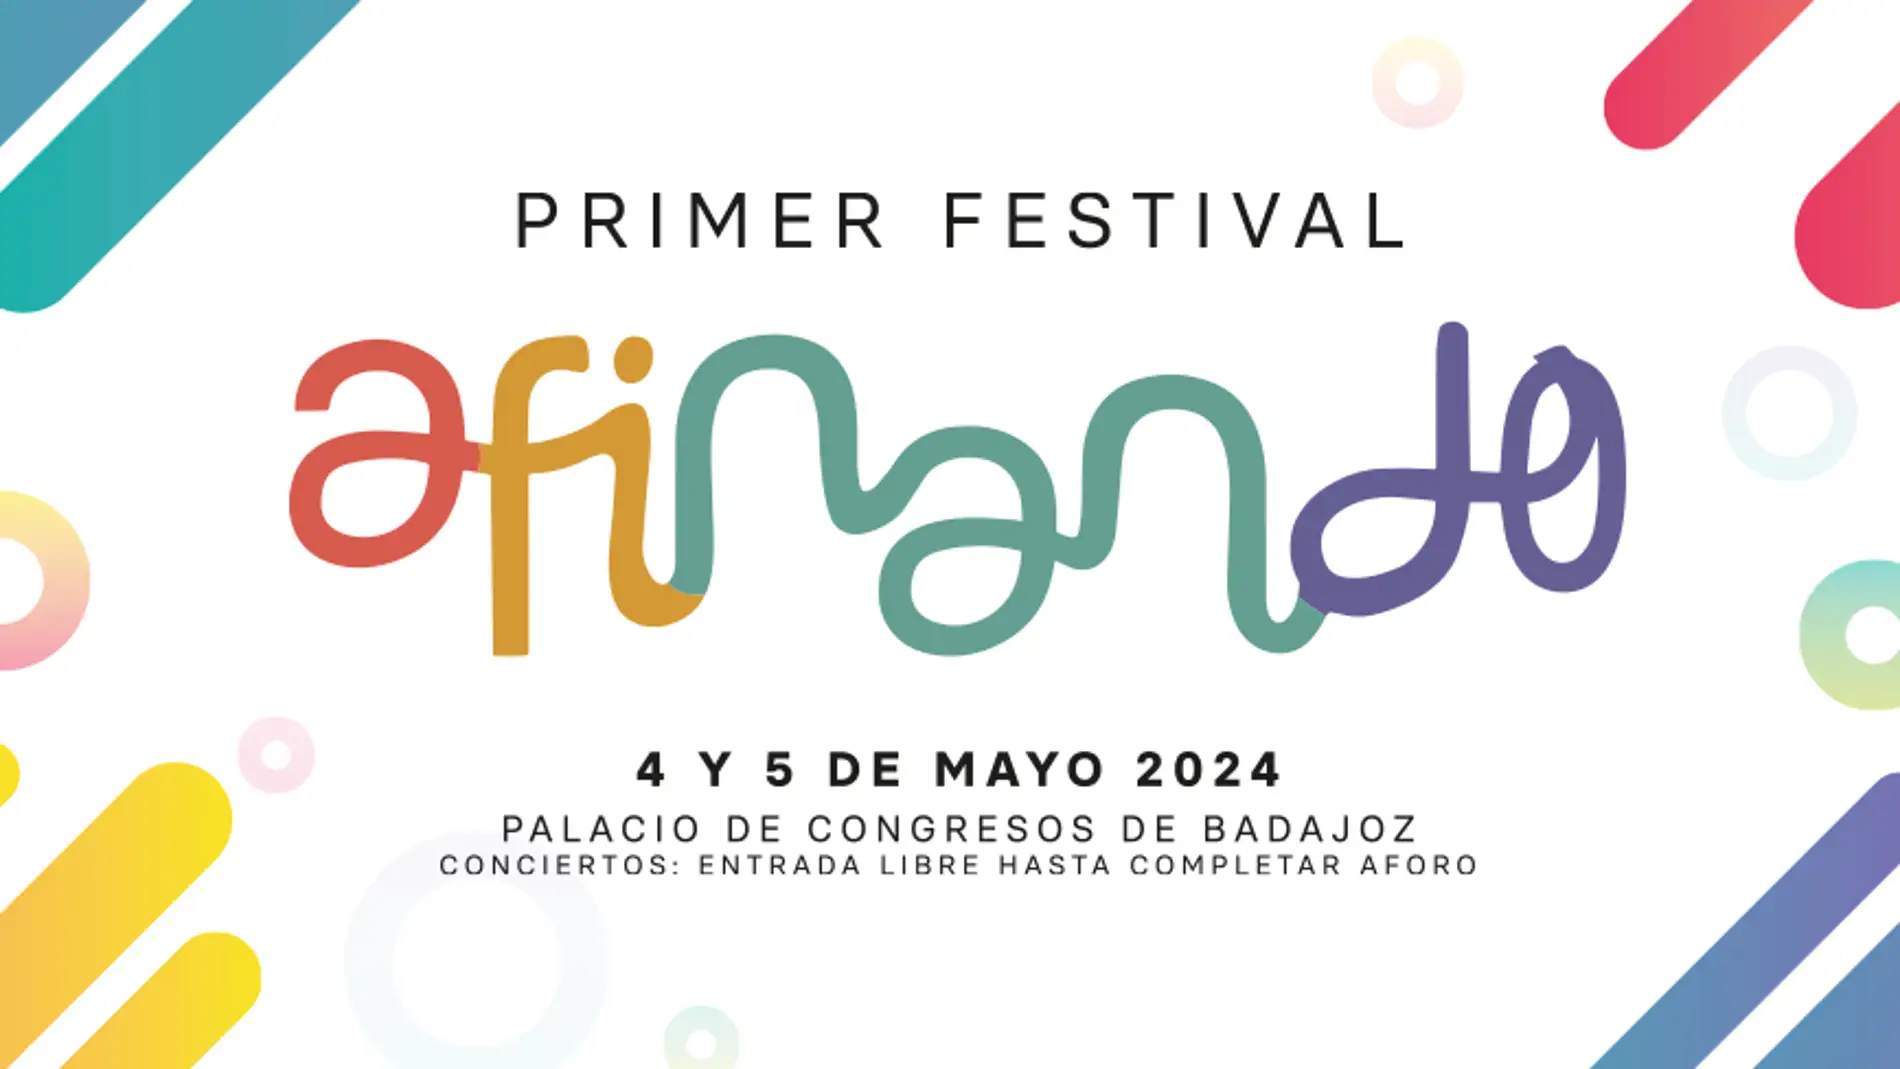 La Fundación Orquesta de Extremadura celebra el I Festival Afinando con un programa de conciertos, talleres y muestras